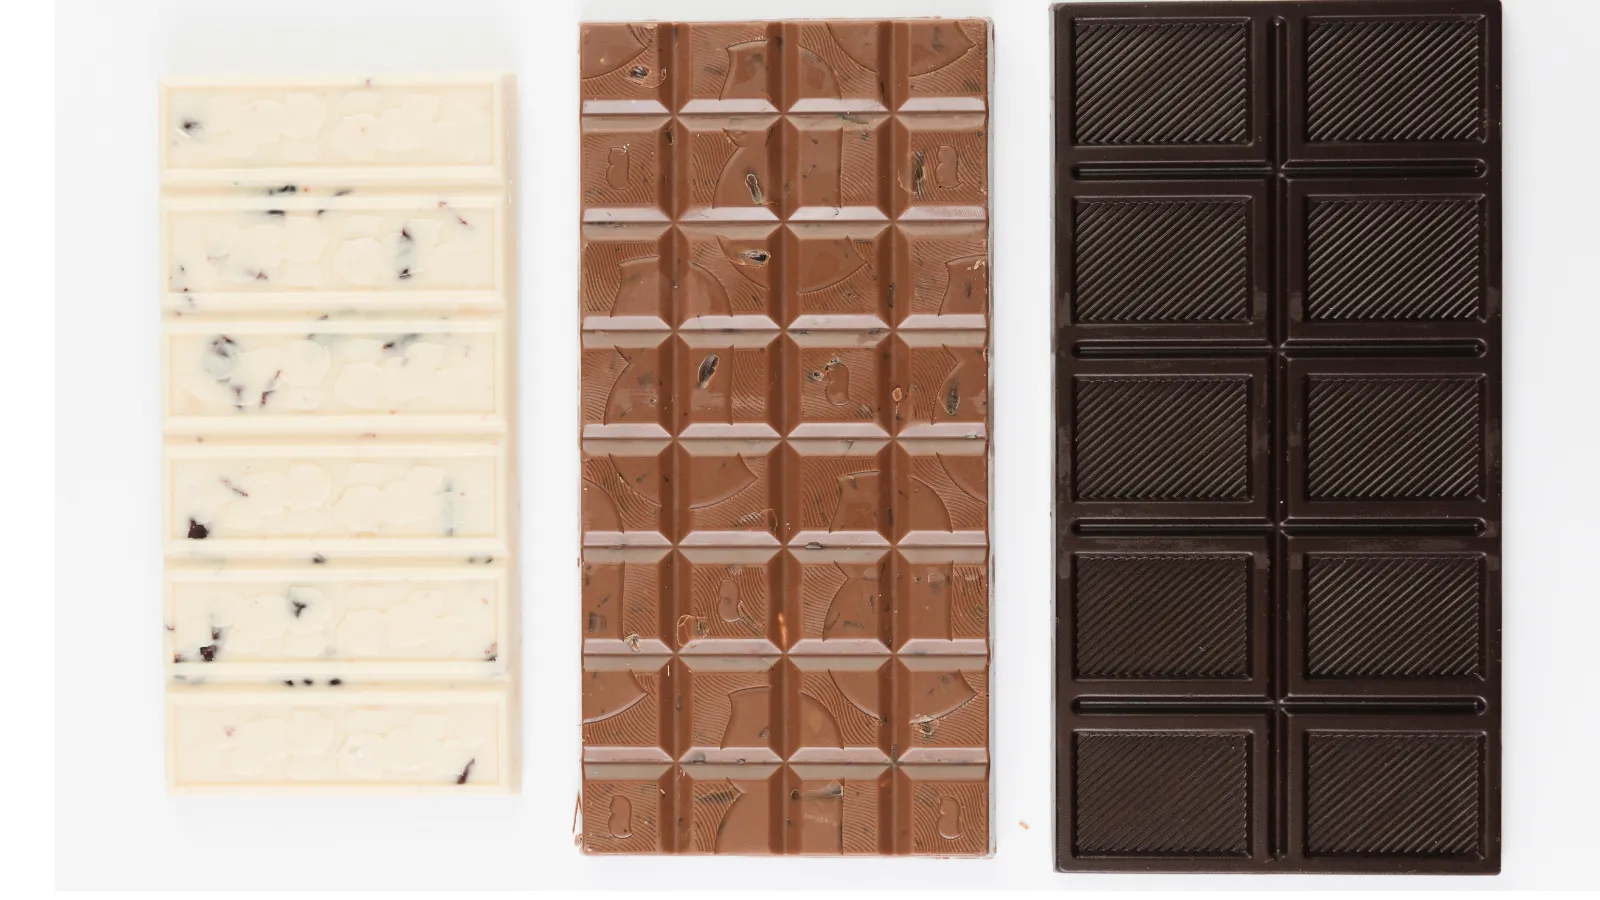 ホワイトチョコレート、ミルクチョコレート、ダークチョコレートの写真